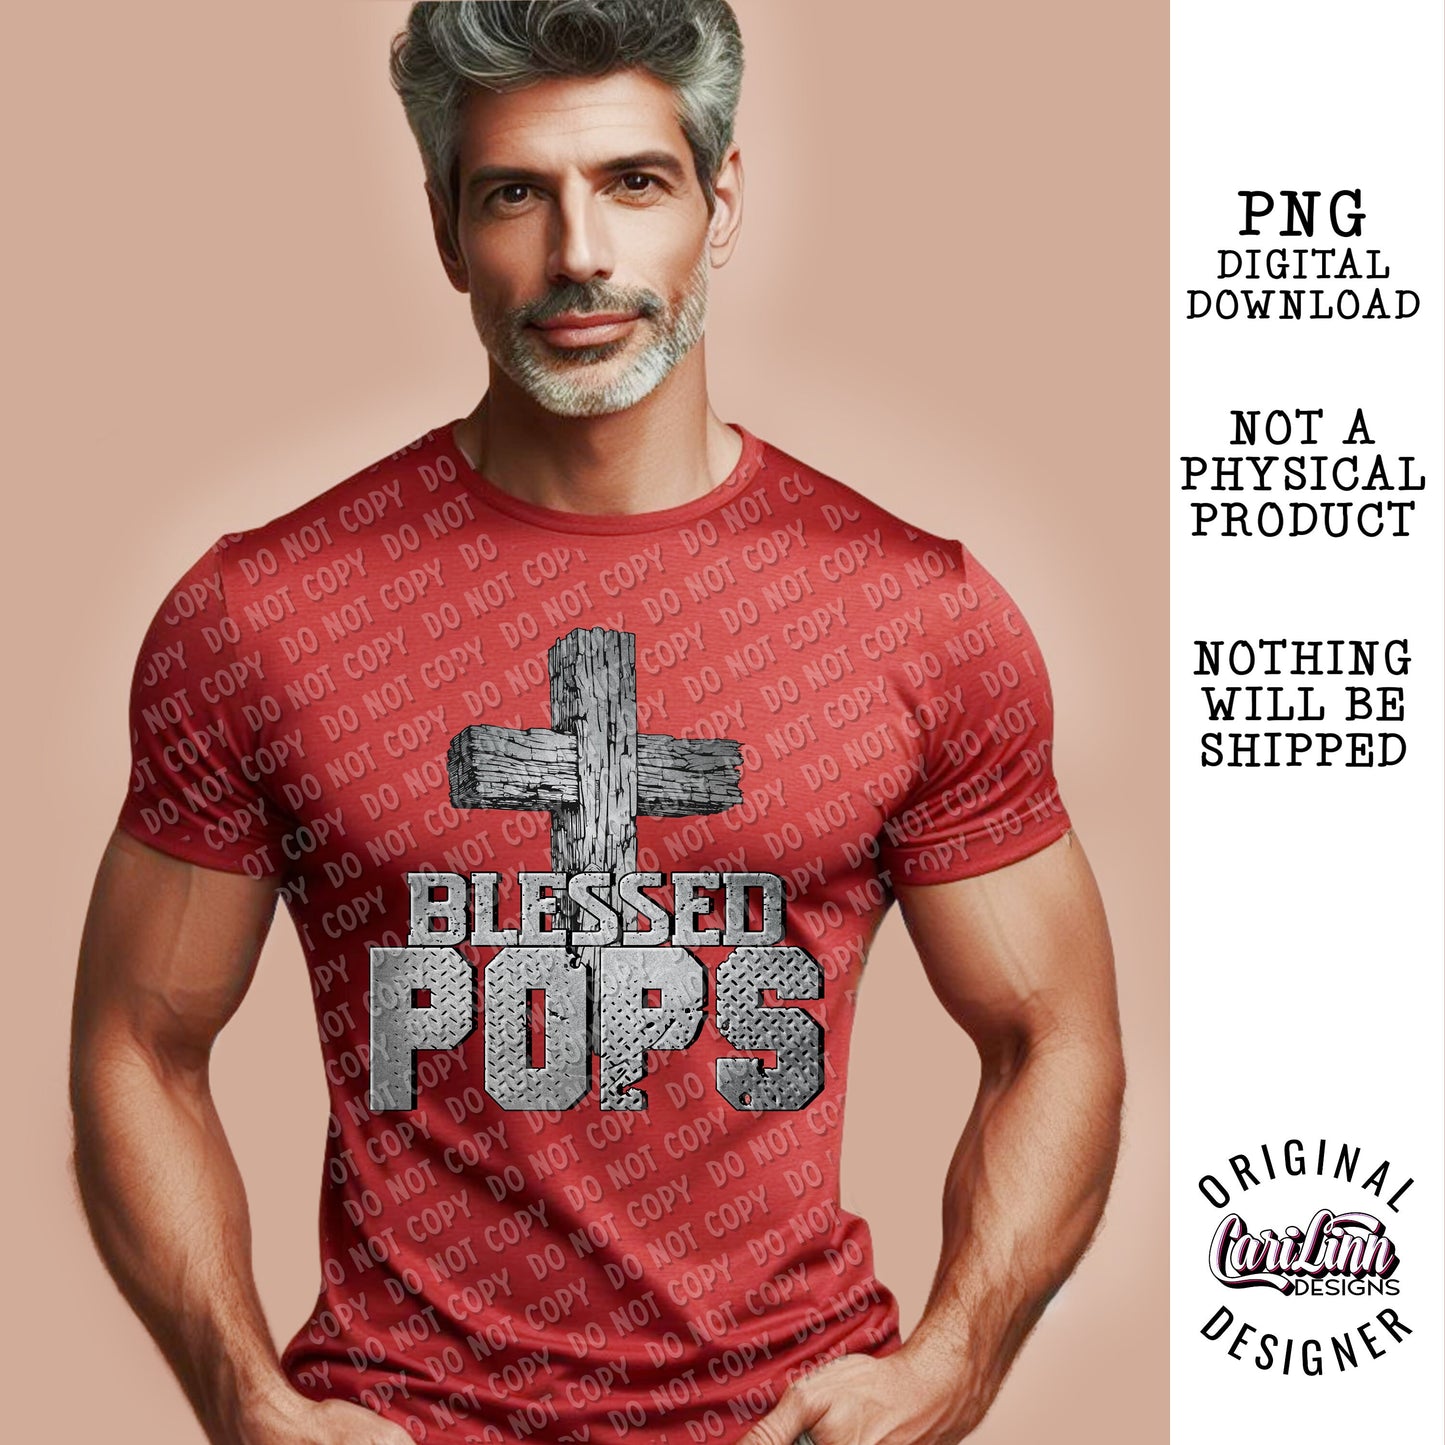 Blessed Pops, Original Designer, PNG Digital Download for Sublimation, DTF, DTG